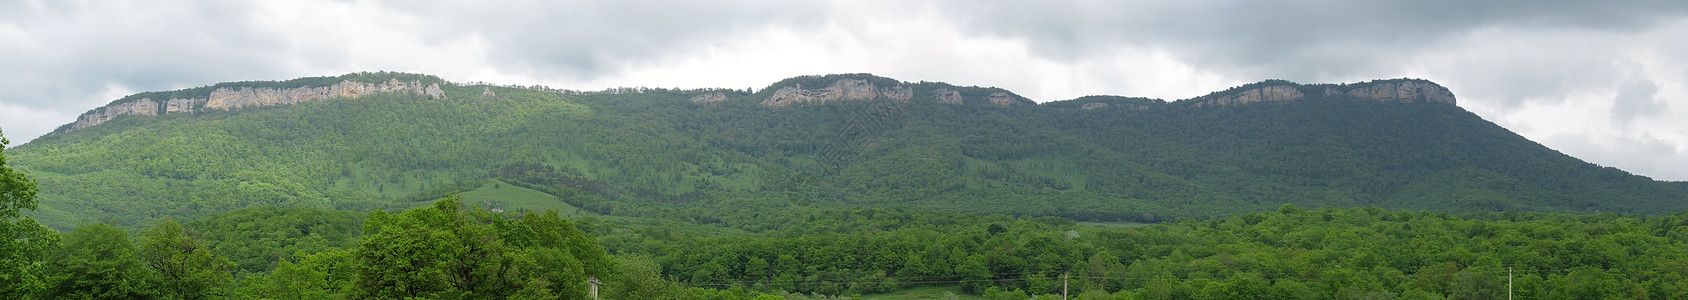 全景高山植被岩石斜坡一条路线旅行文件风景山峰山丘图片